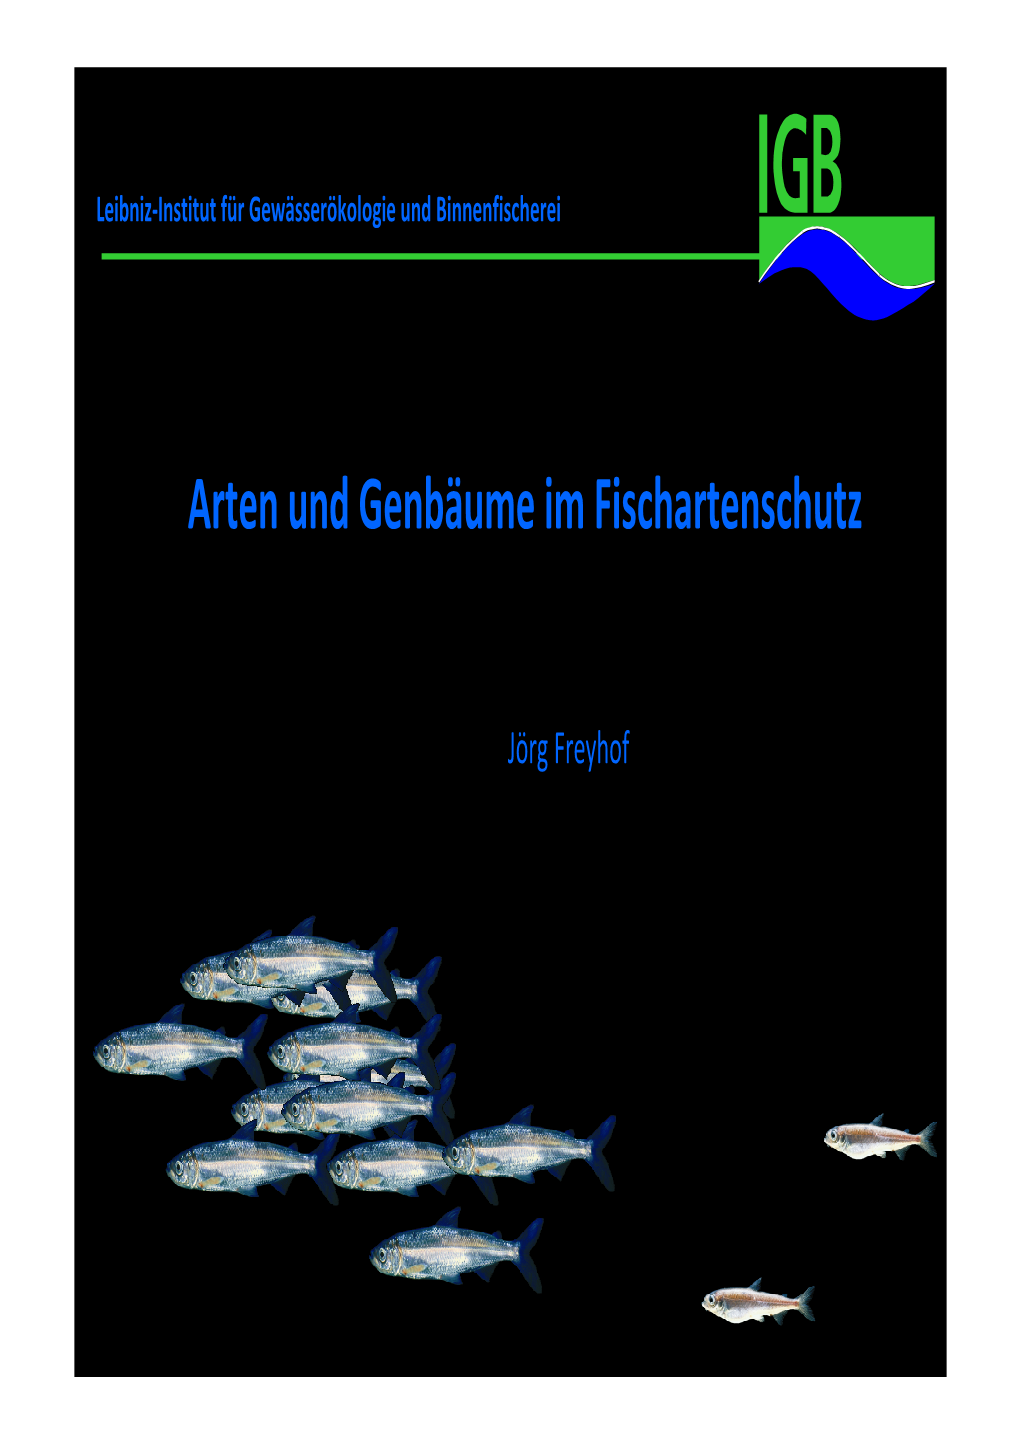 Vortrag Dr. J. Freyhof: Arten Und Genbäume Im Fischartenschutz